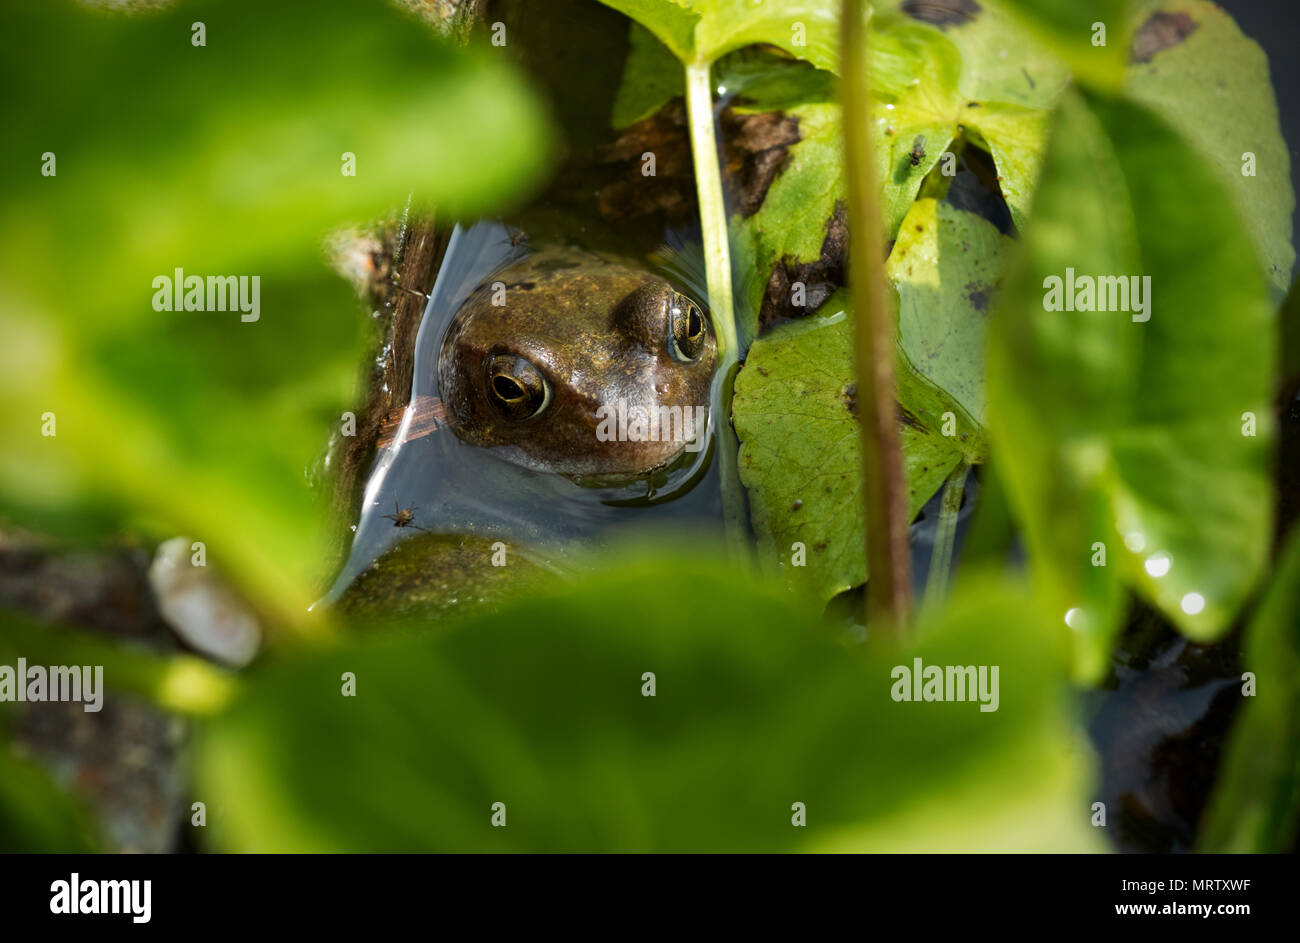 Grenouille Rousse en étang de jardin Thaxted Essex England UK Mai 2018 La grenouille rousse (Rana temporaria), également connu sous le nom de l'intérêt commun européen, grenouille commo Banque D'Images